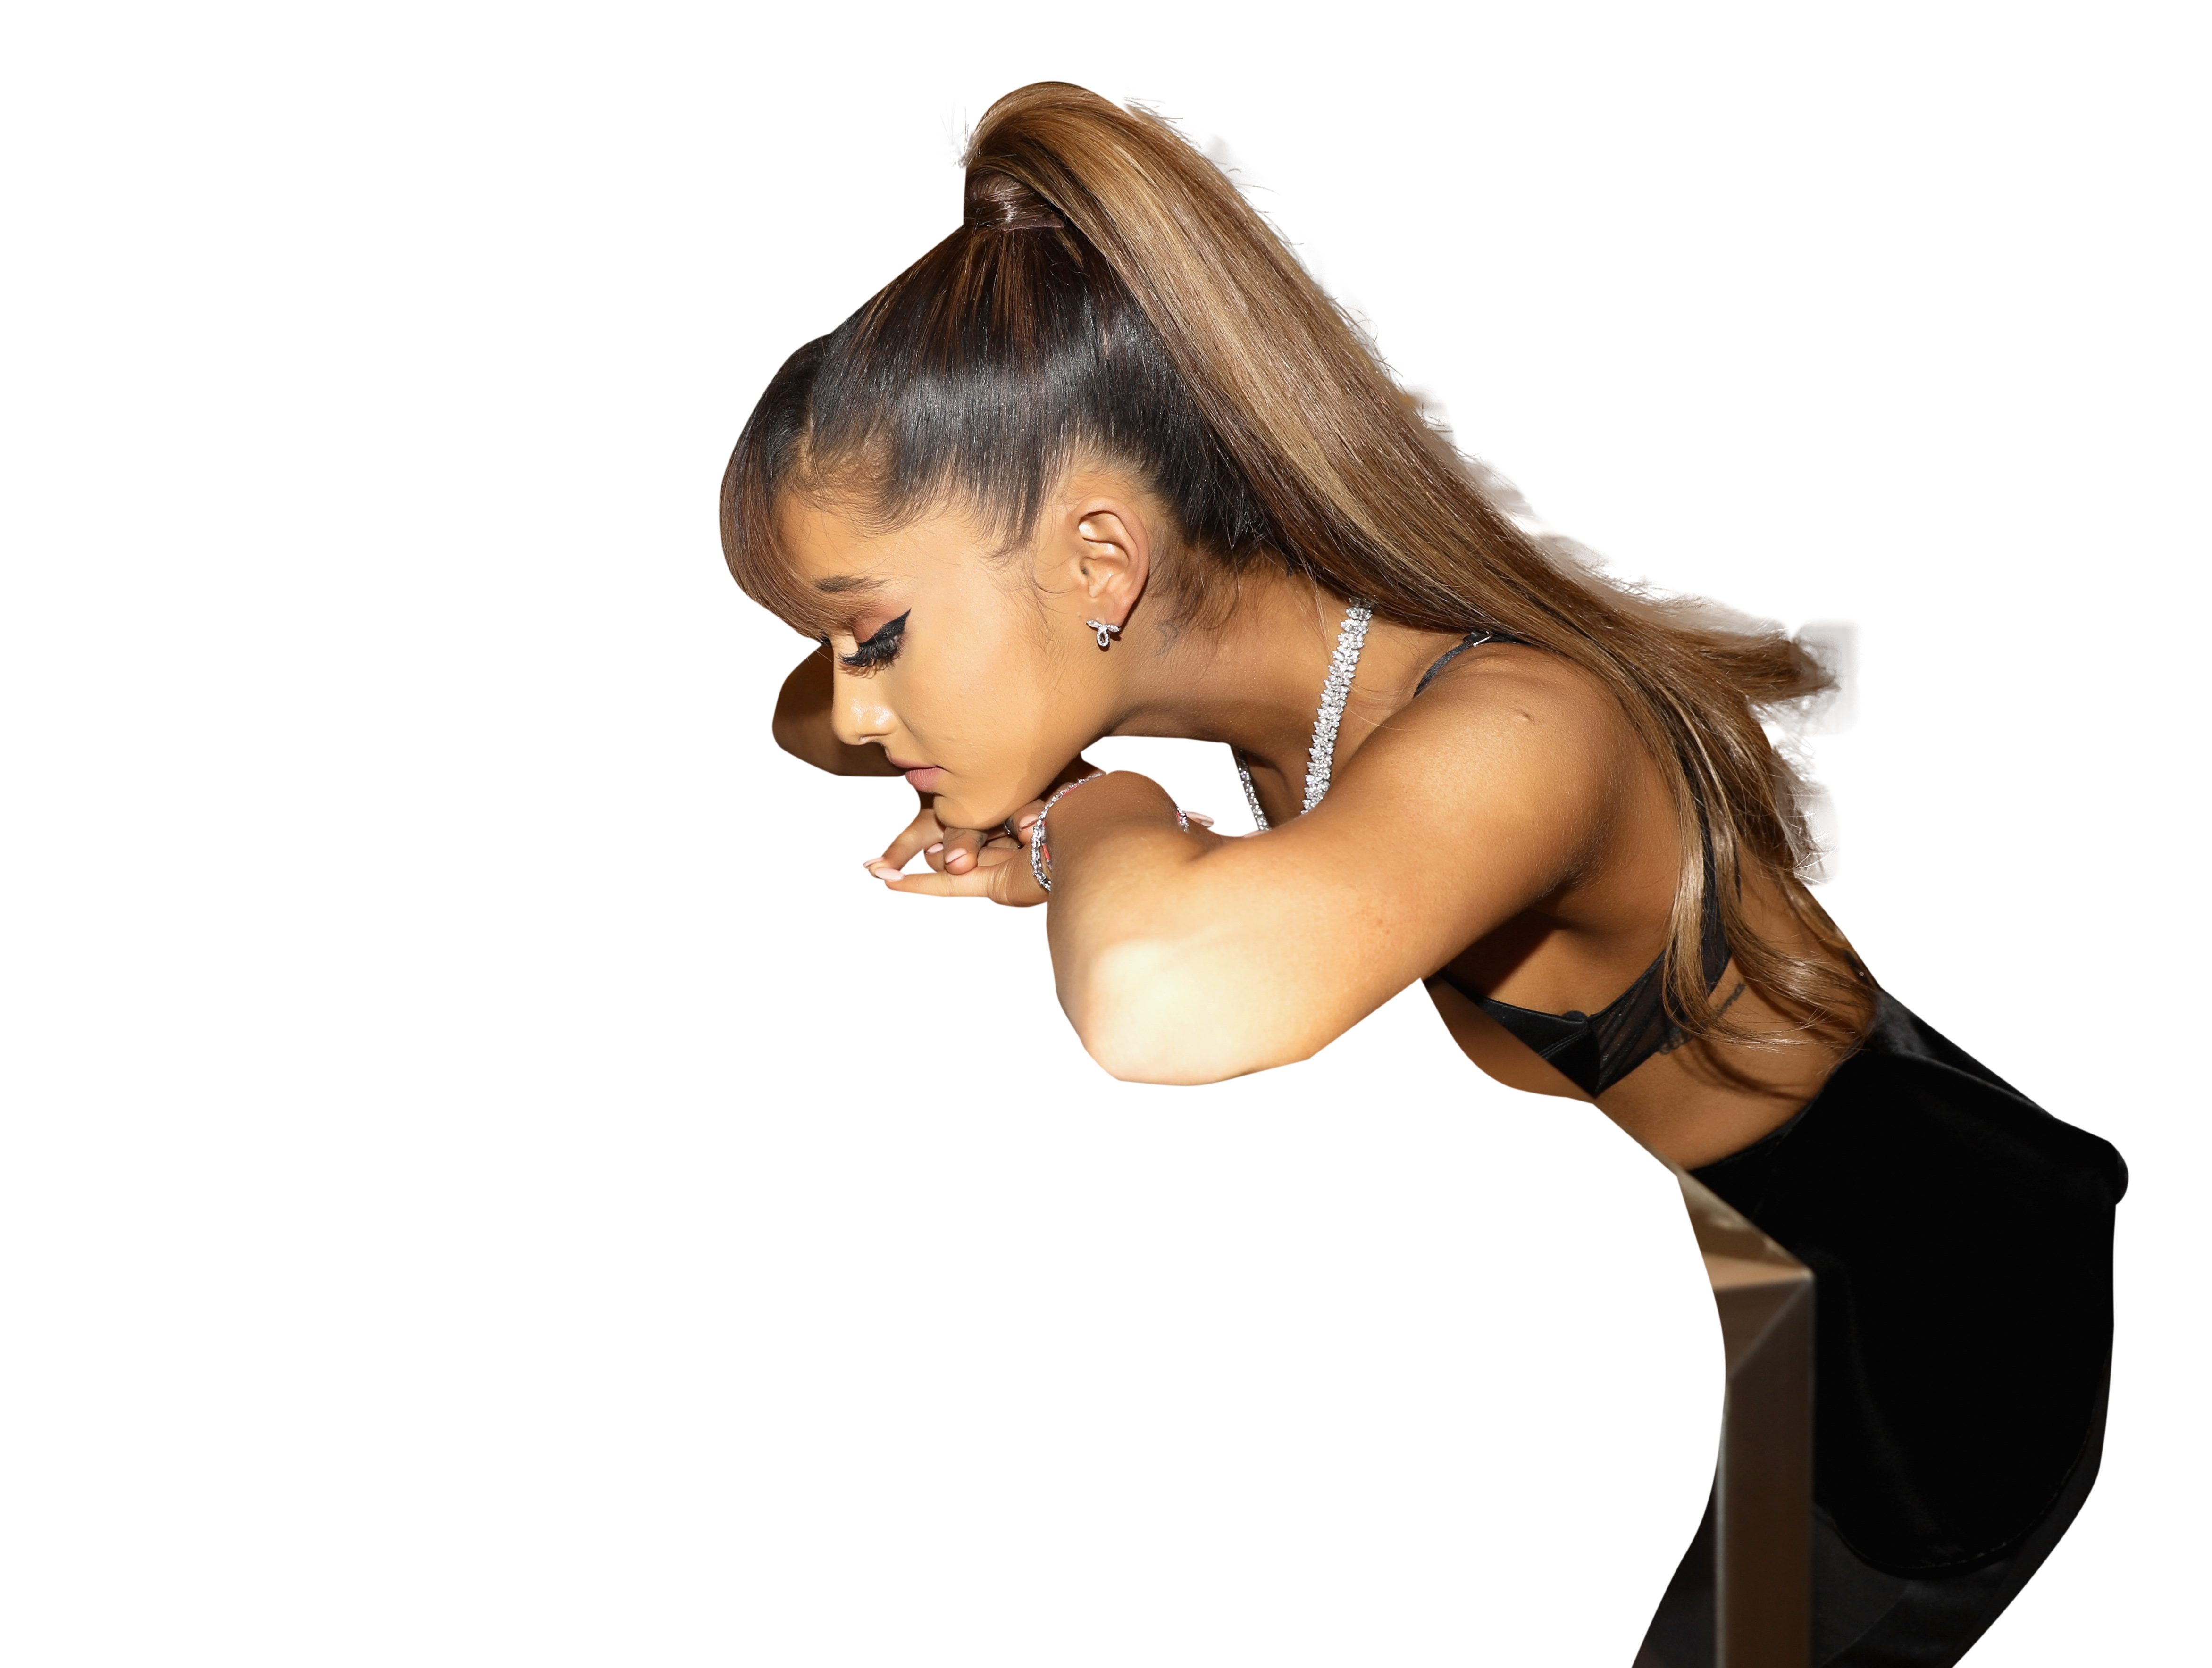 Ariana Grande in hot black bikini and leggings PNG Image.